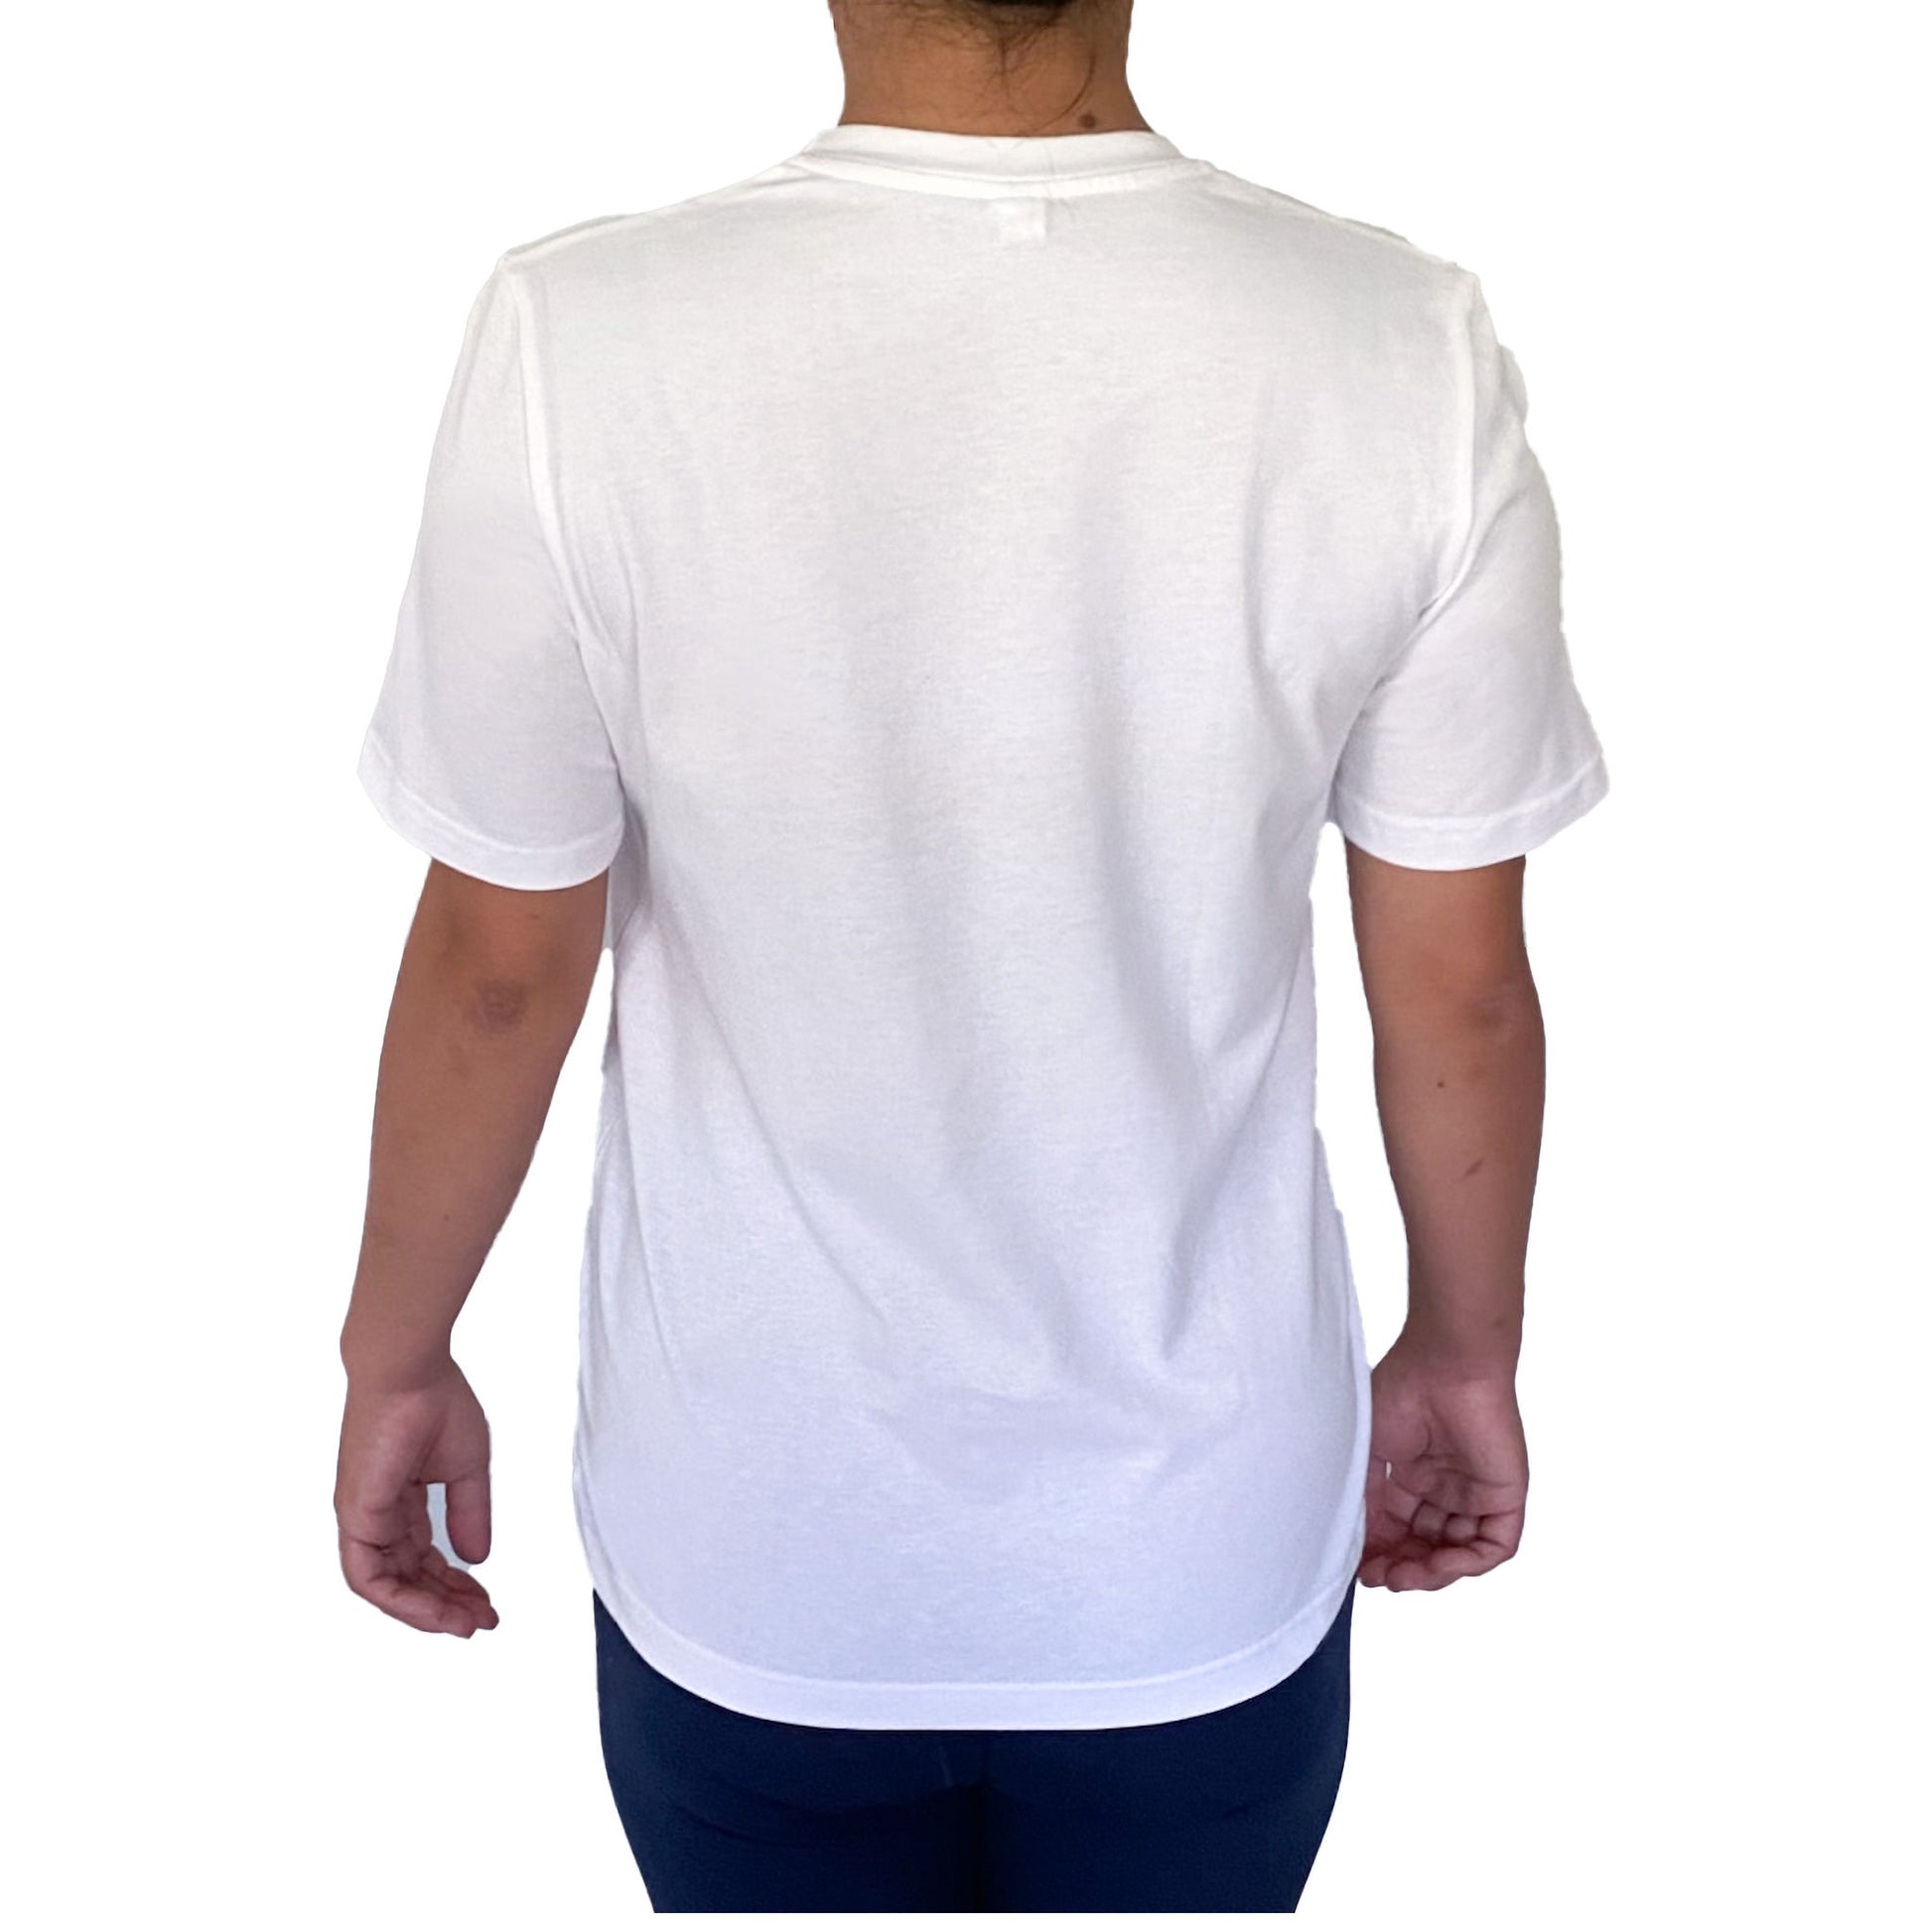 Ethical organic unisex t-shirt White Crew neck Classic range